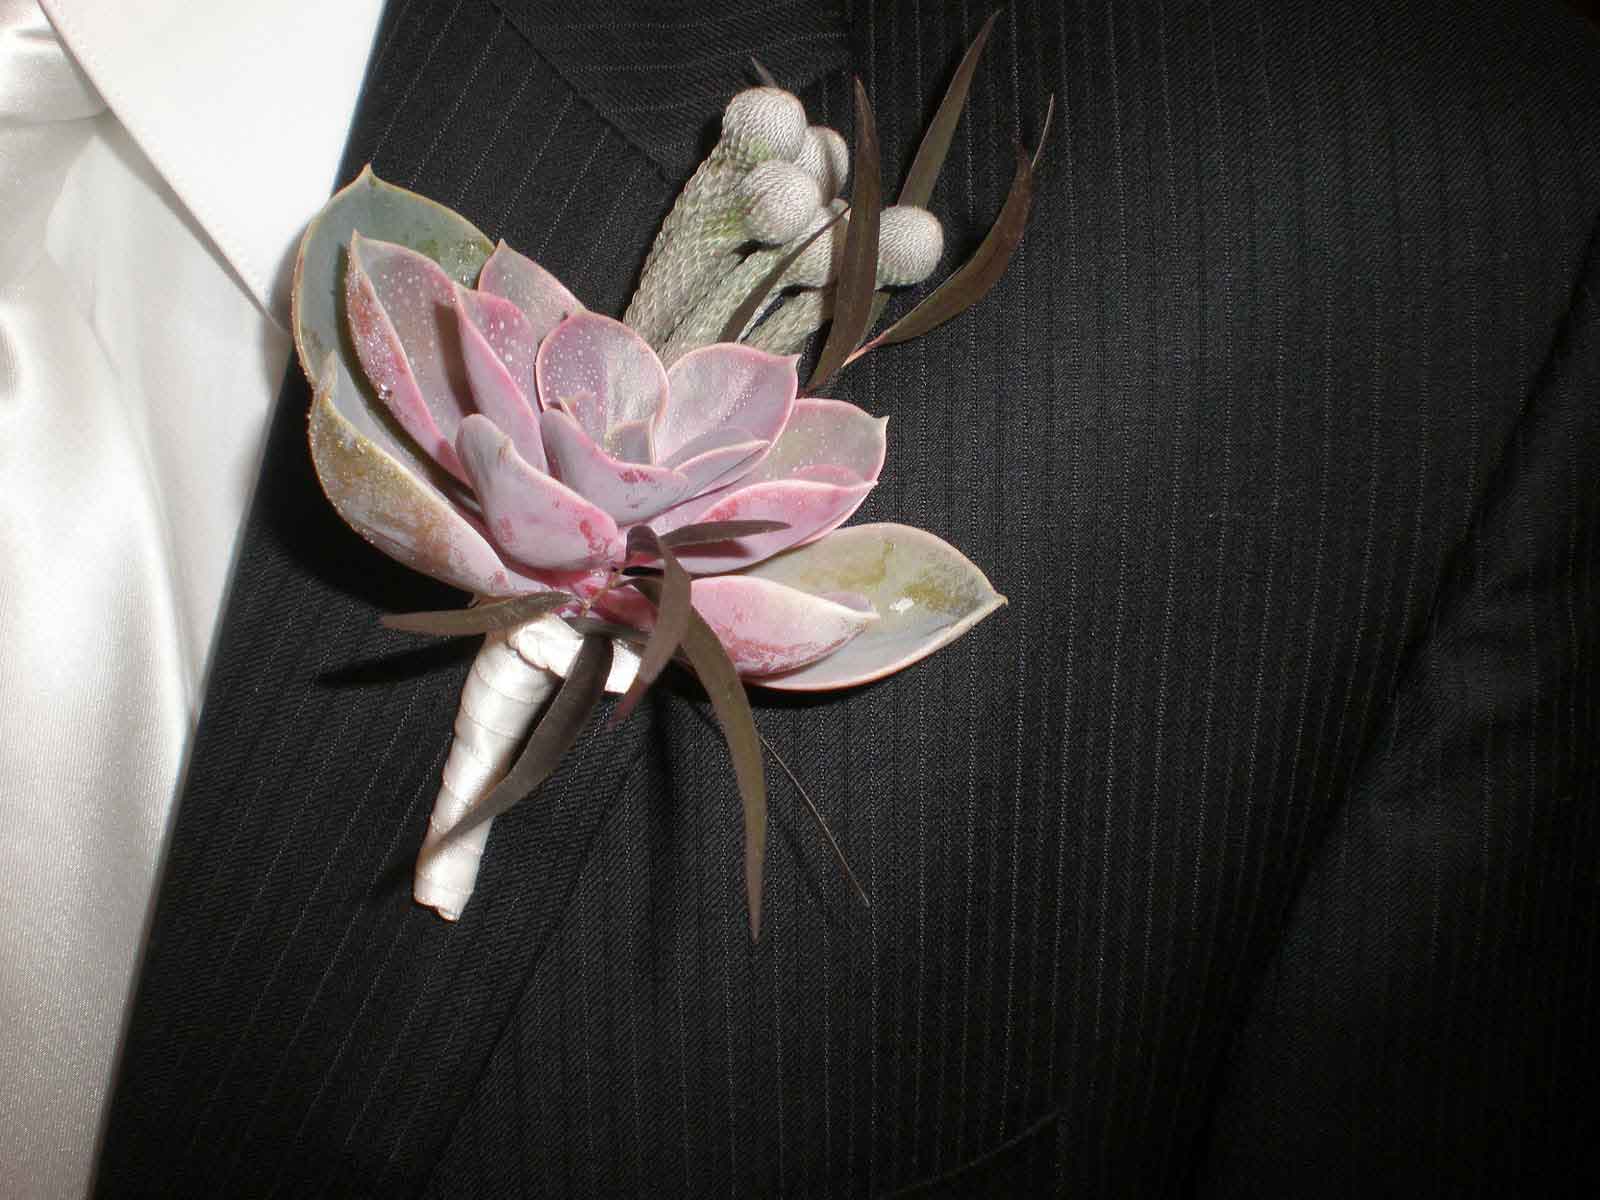 Hoa cài áo chú rể làm từ hoa sen đá và xương rồng